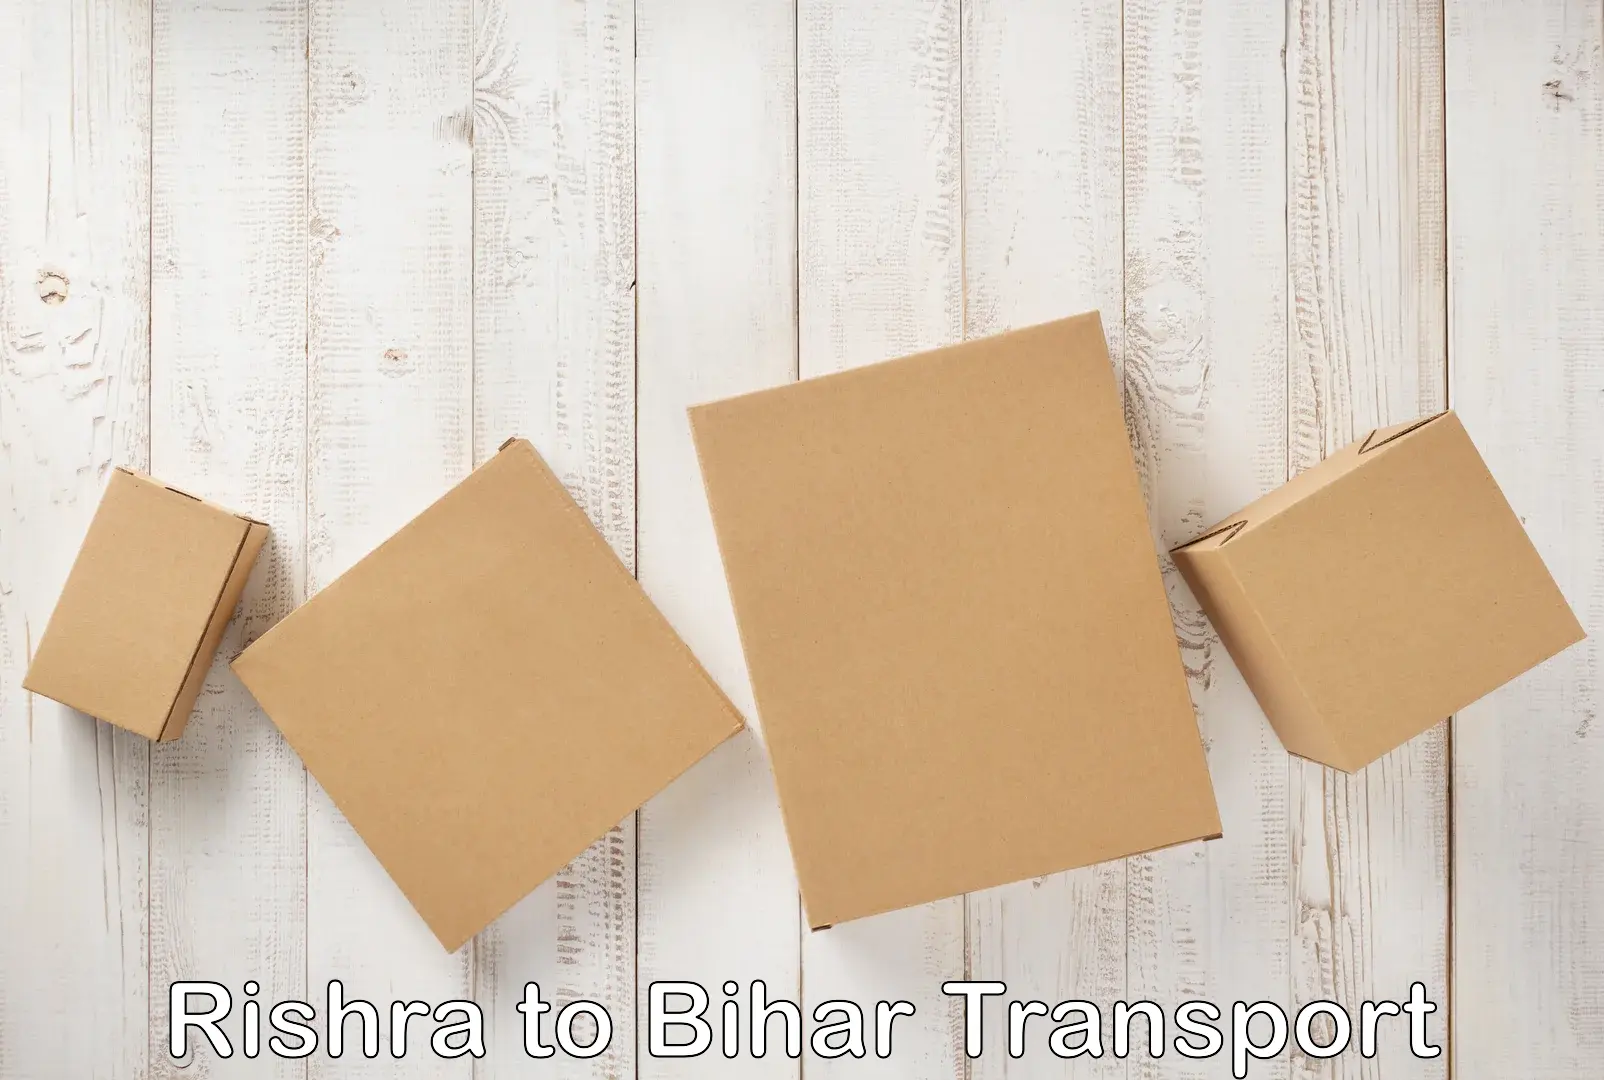 Bike transport service Rishra to Bihar